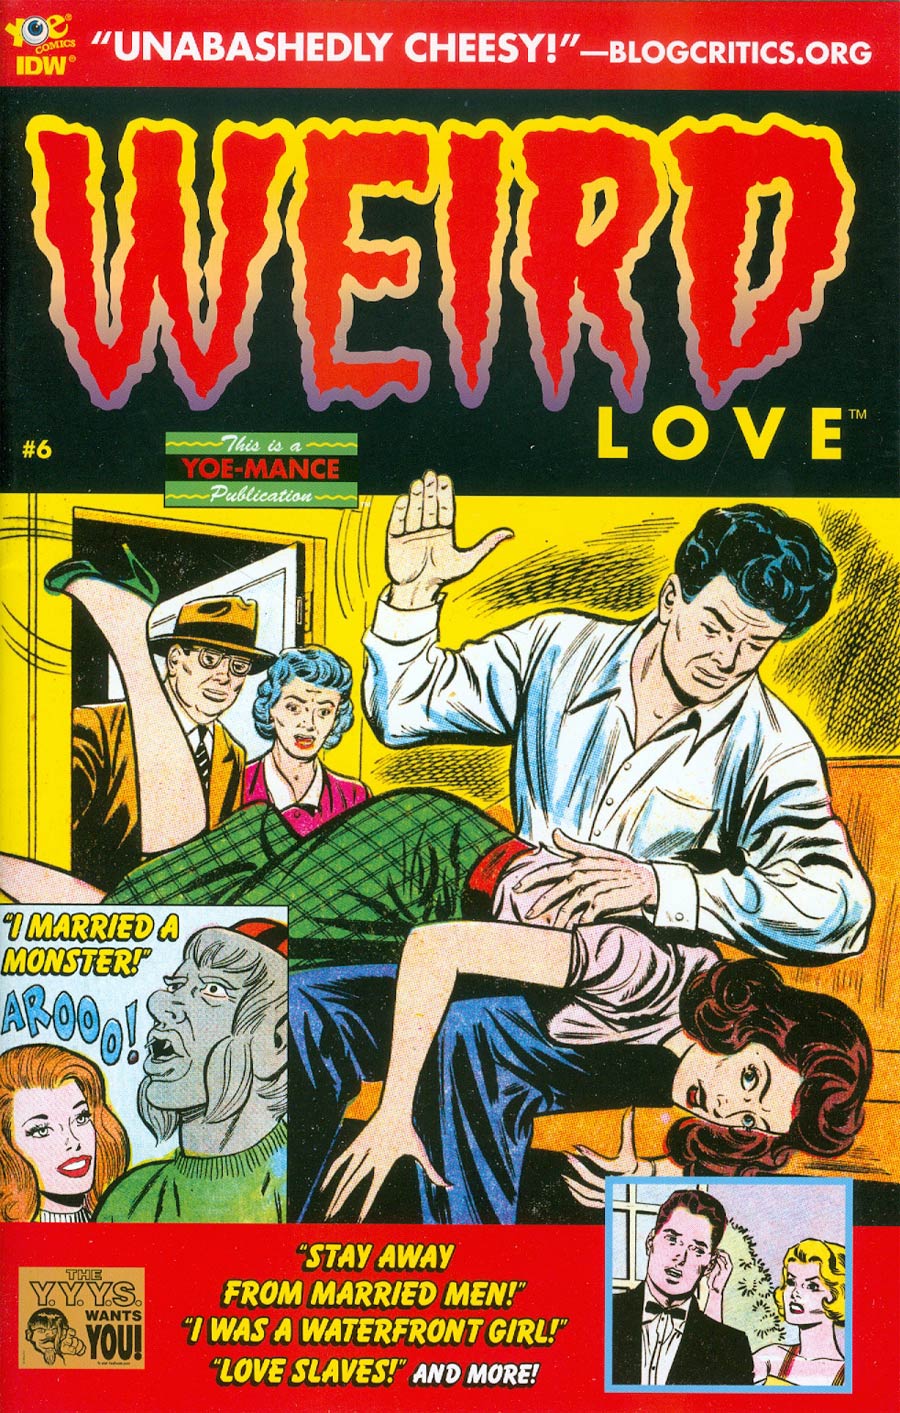 Weird Love #6